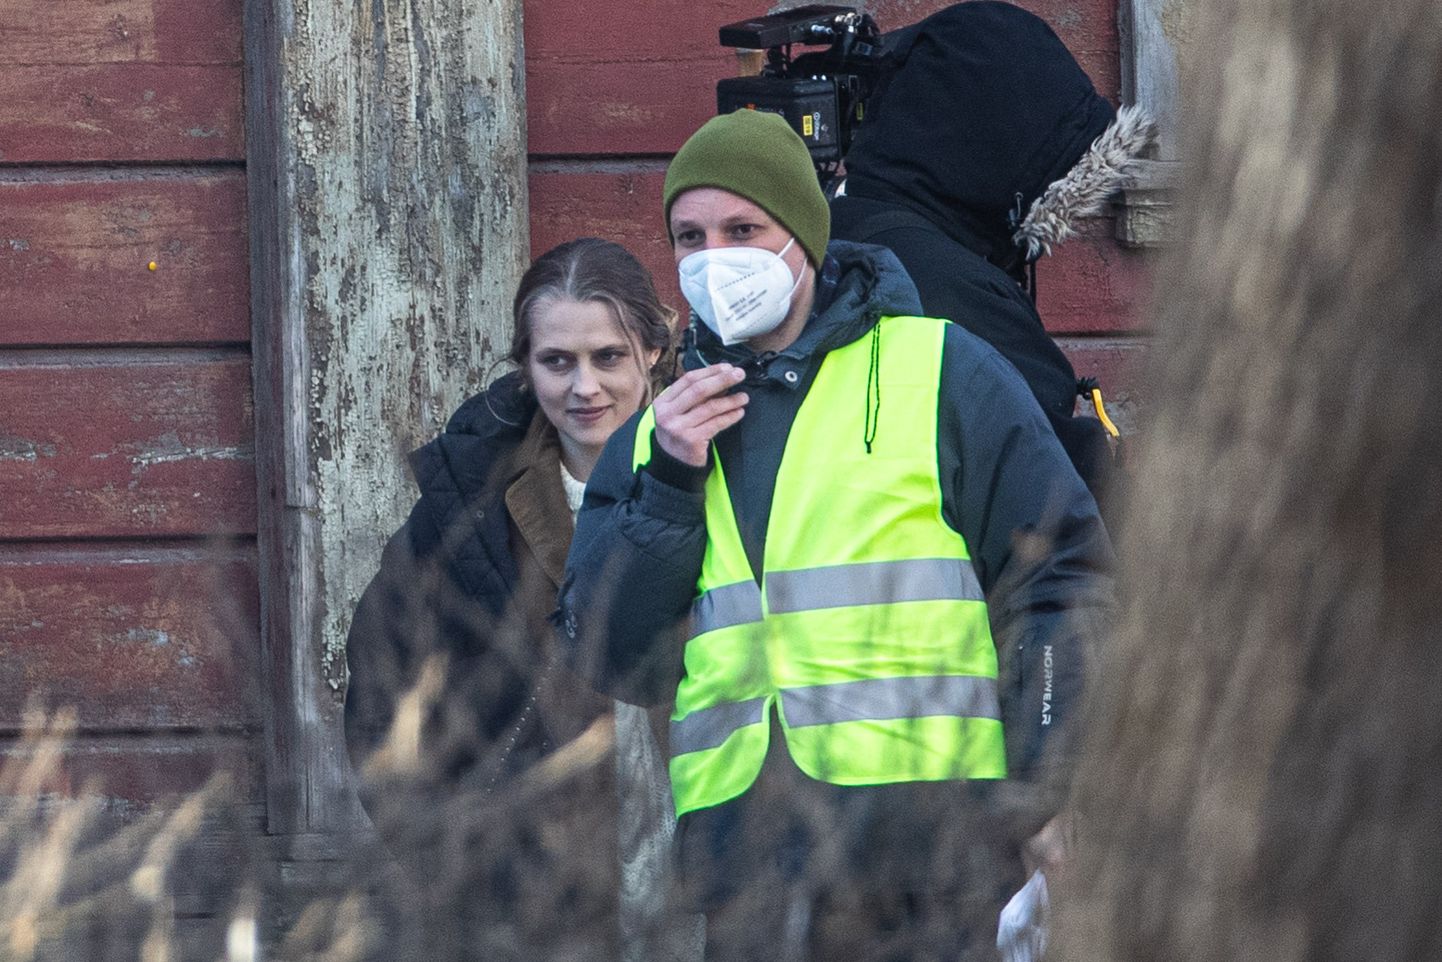 Финский ужастик "Близнец" снимали в Эстонии, кадр от 8 апреля, Вильянди.